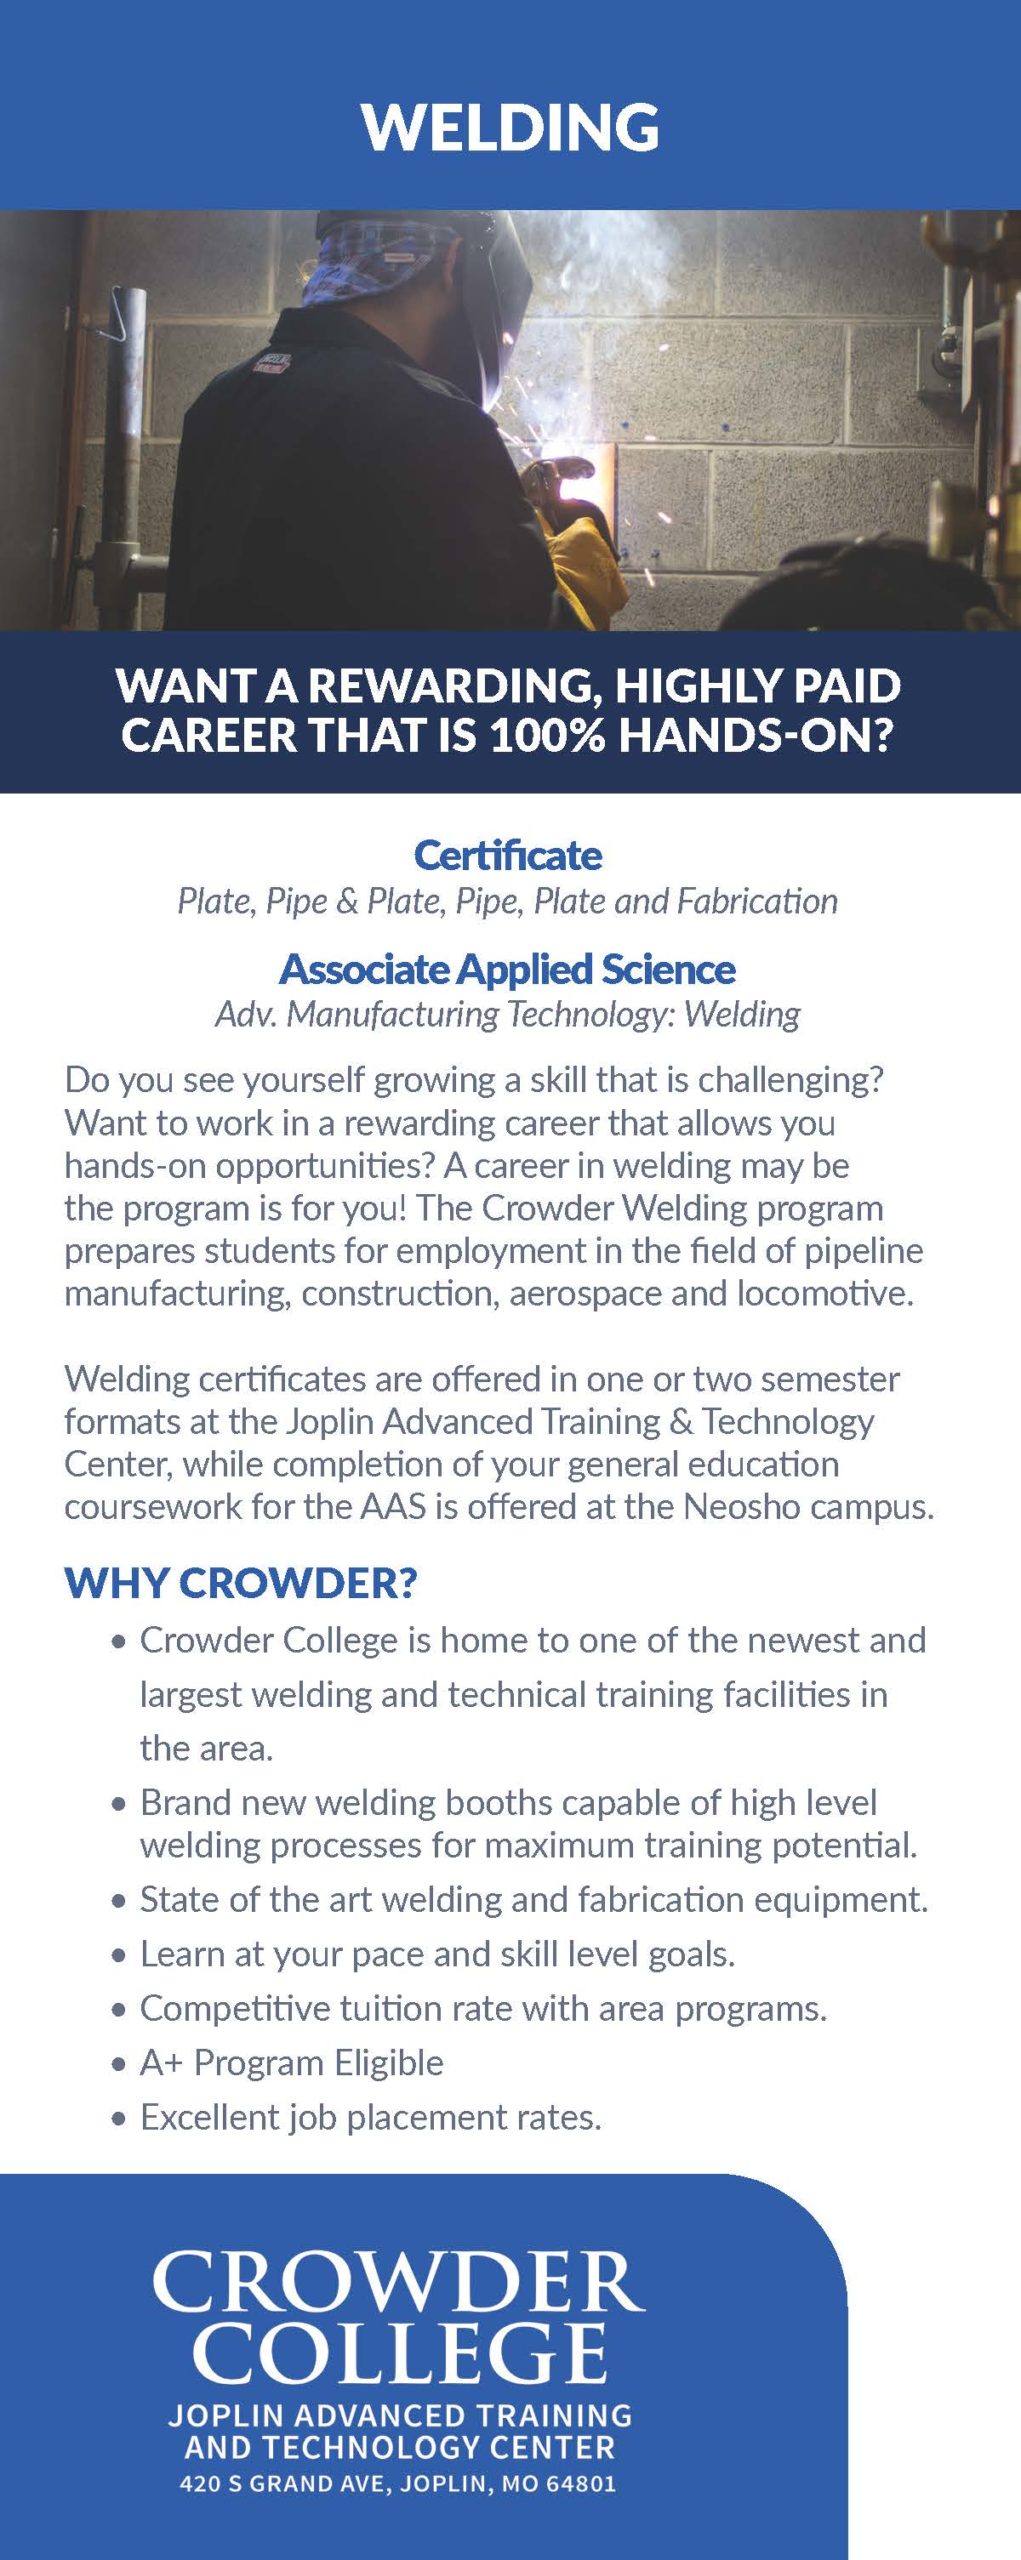 Welding program information at Crowder College